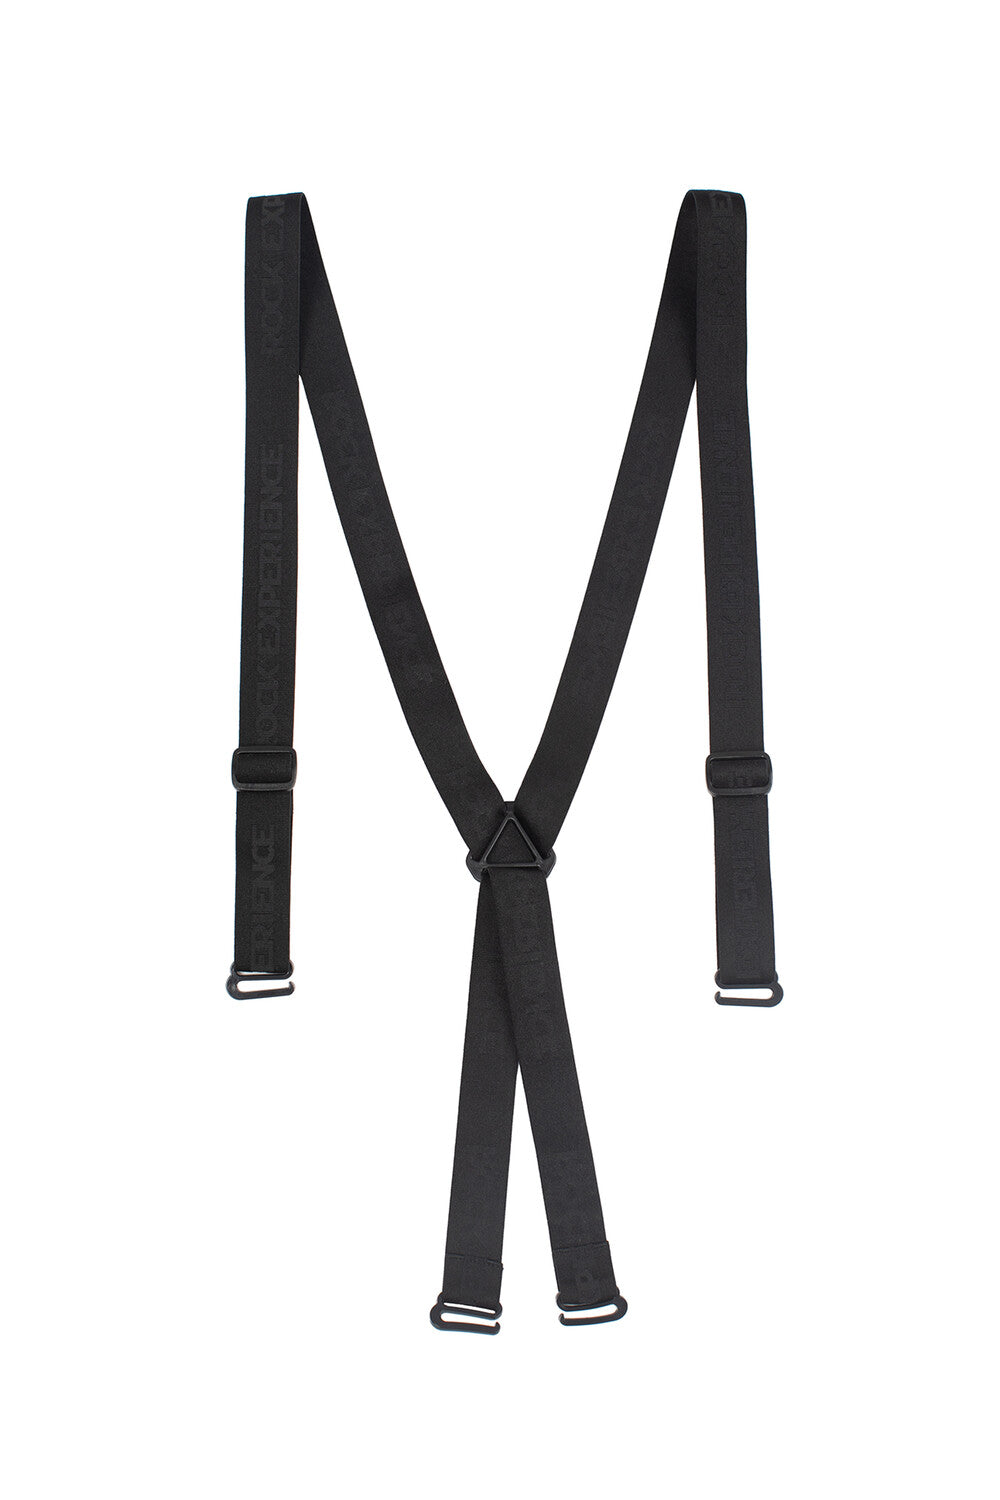 Unisex Suspenders